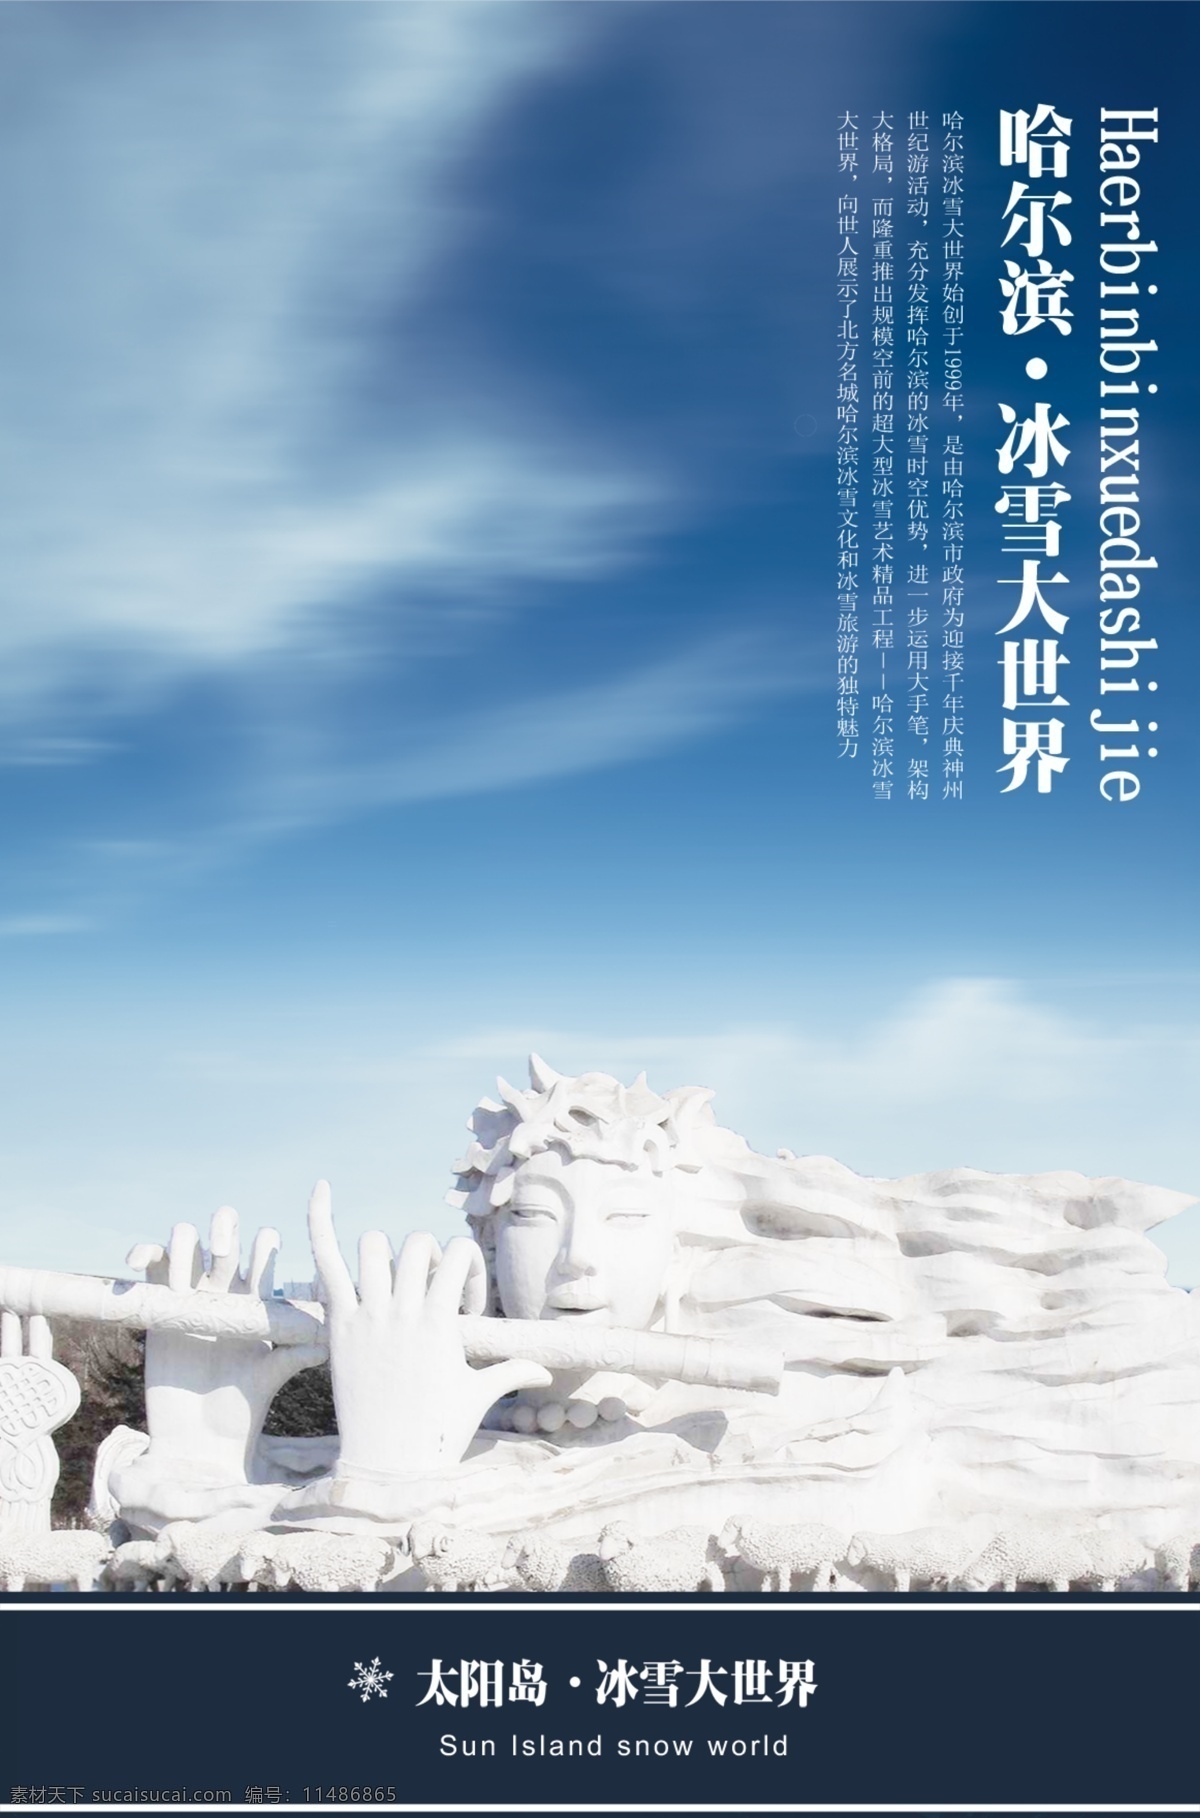 冰雪 大世界 哈尔滨 海报 原创设计 原创海报